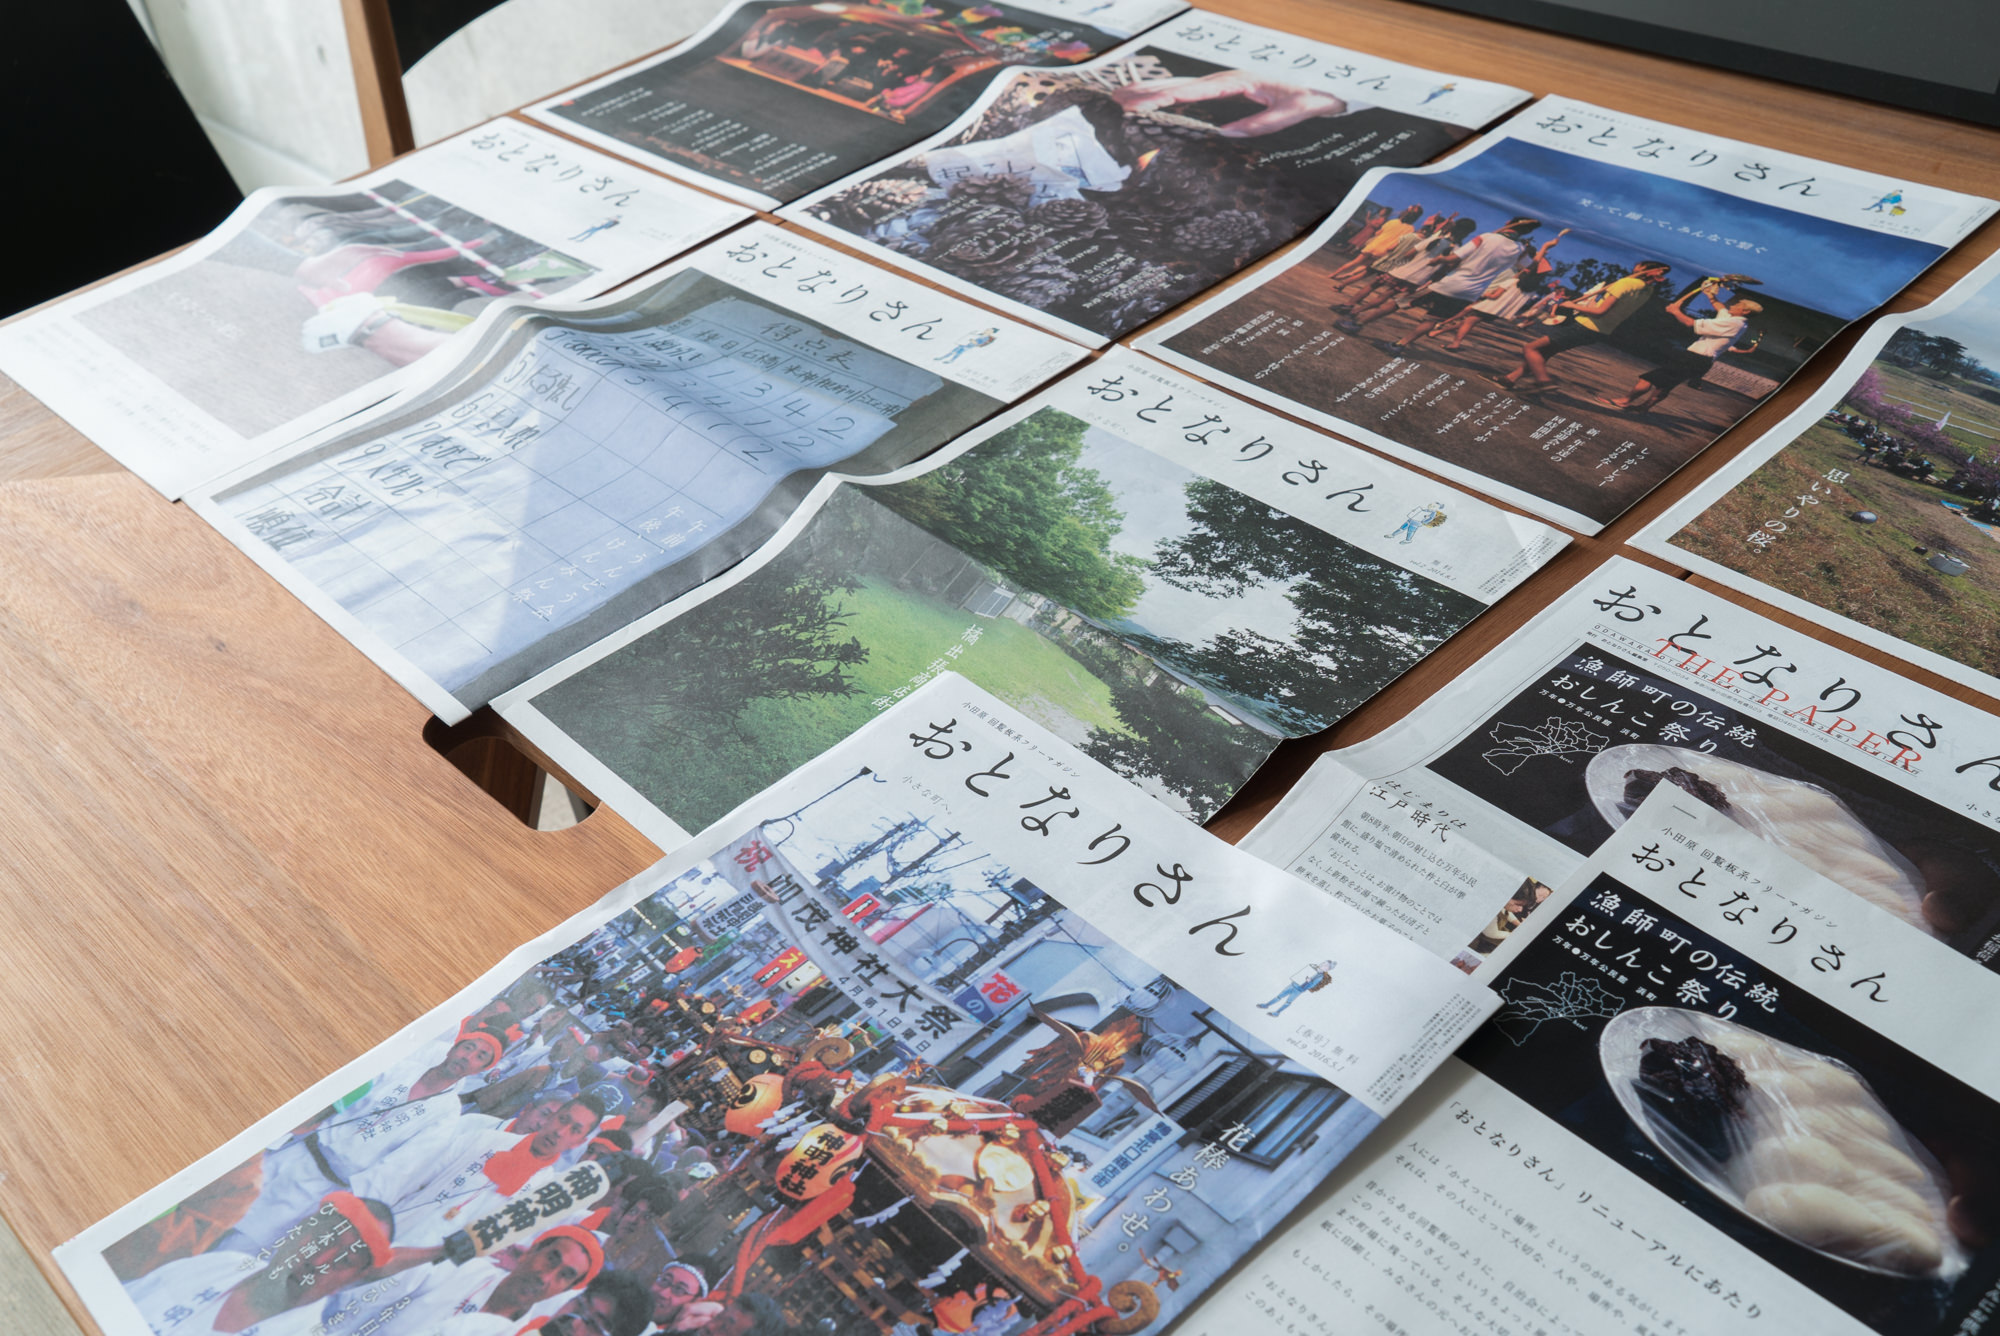 デザインこねこさんが、季刊発行されている小田原回覧板系フリーマガジン「おとなりさん」